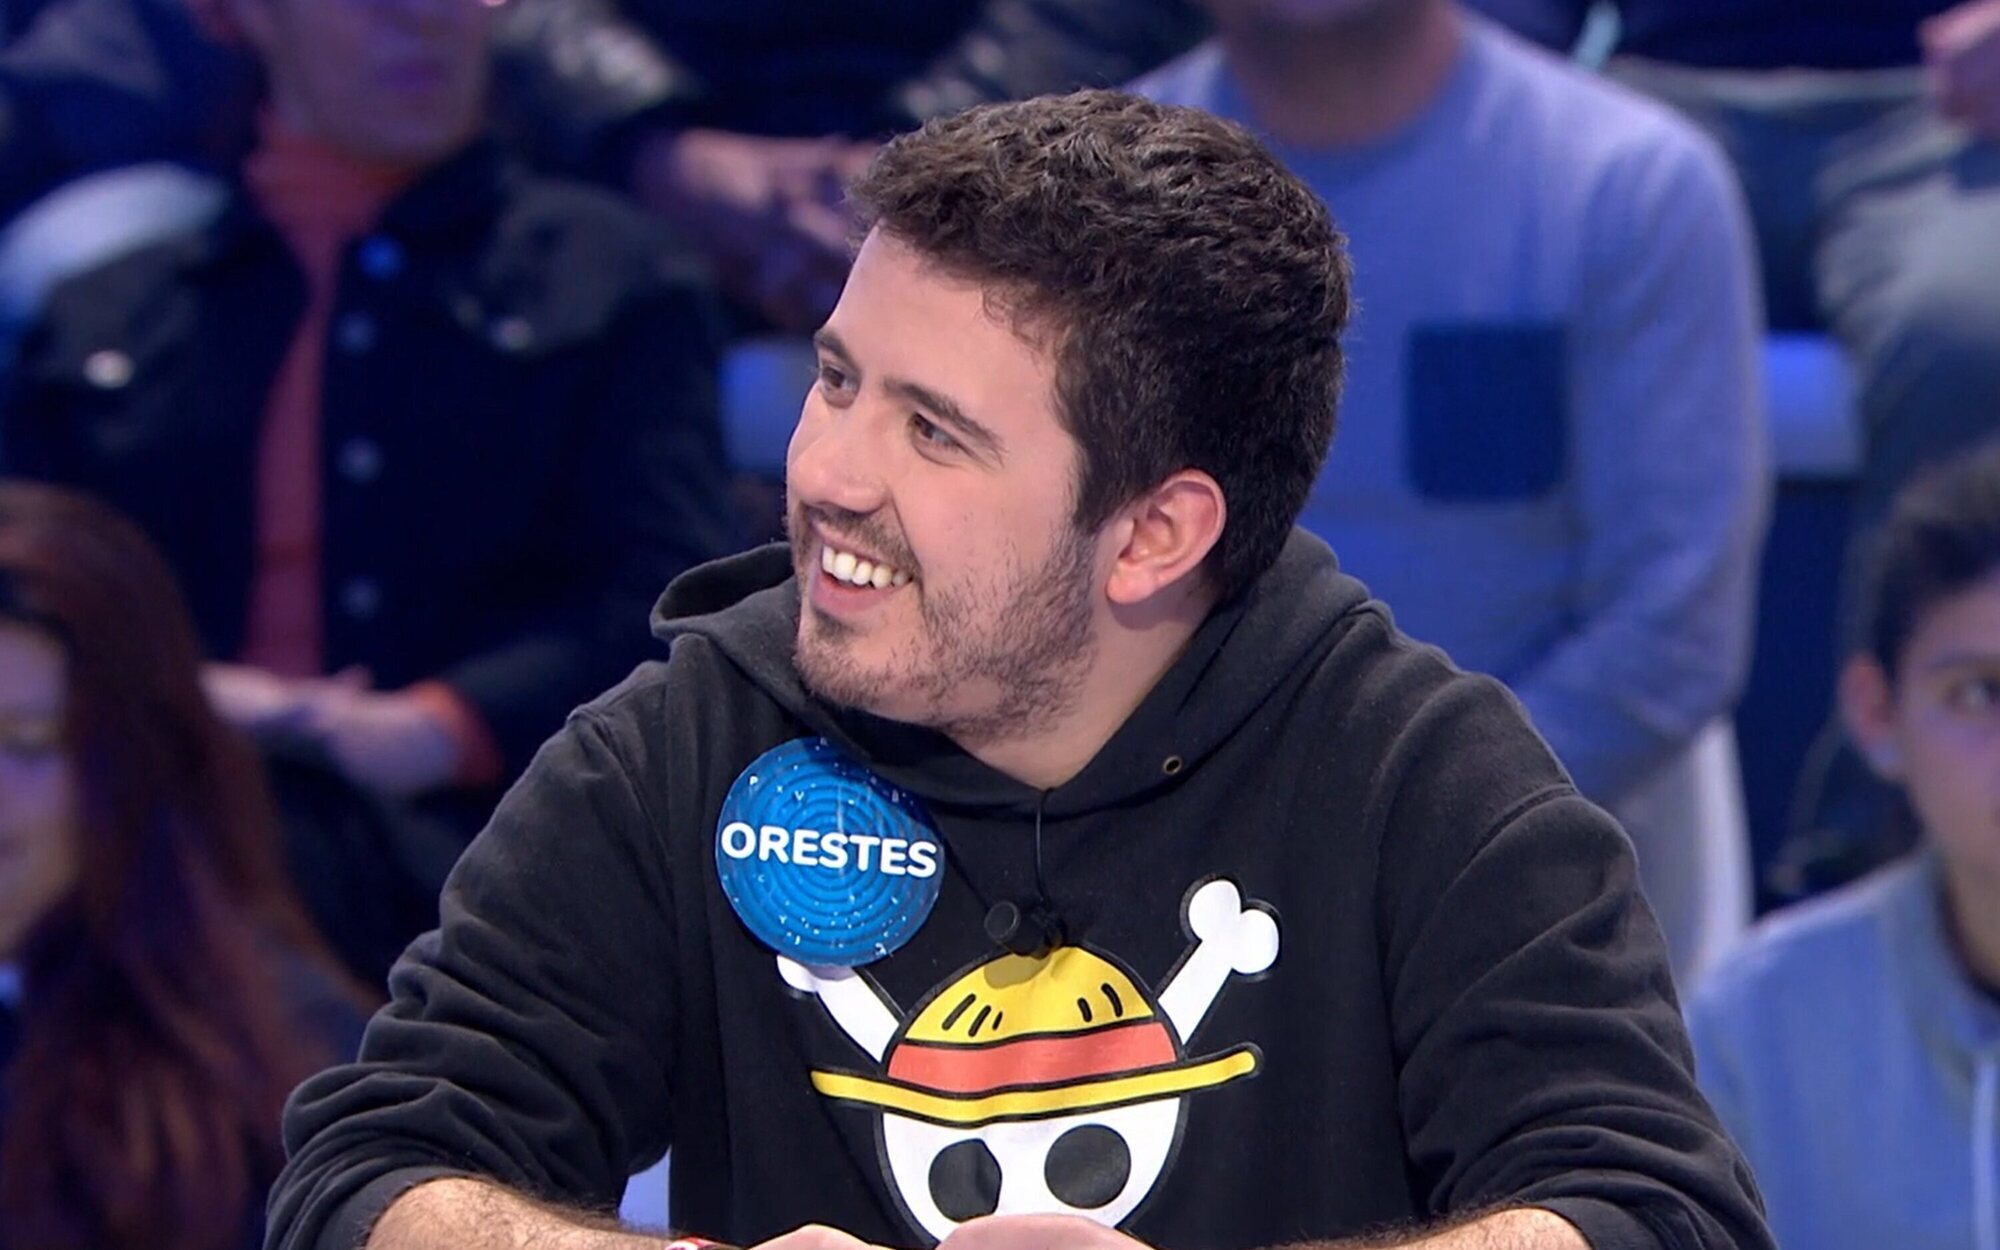 Orestes sorprende en 'Pasapalabra' al desvelar en qué otro programa de Antena 3 le gustaría participar